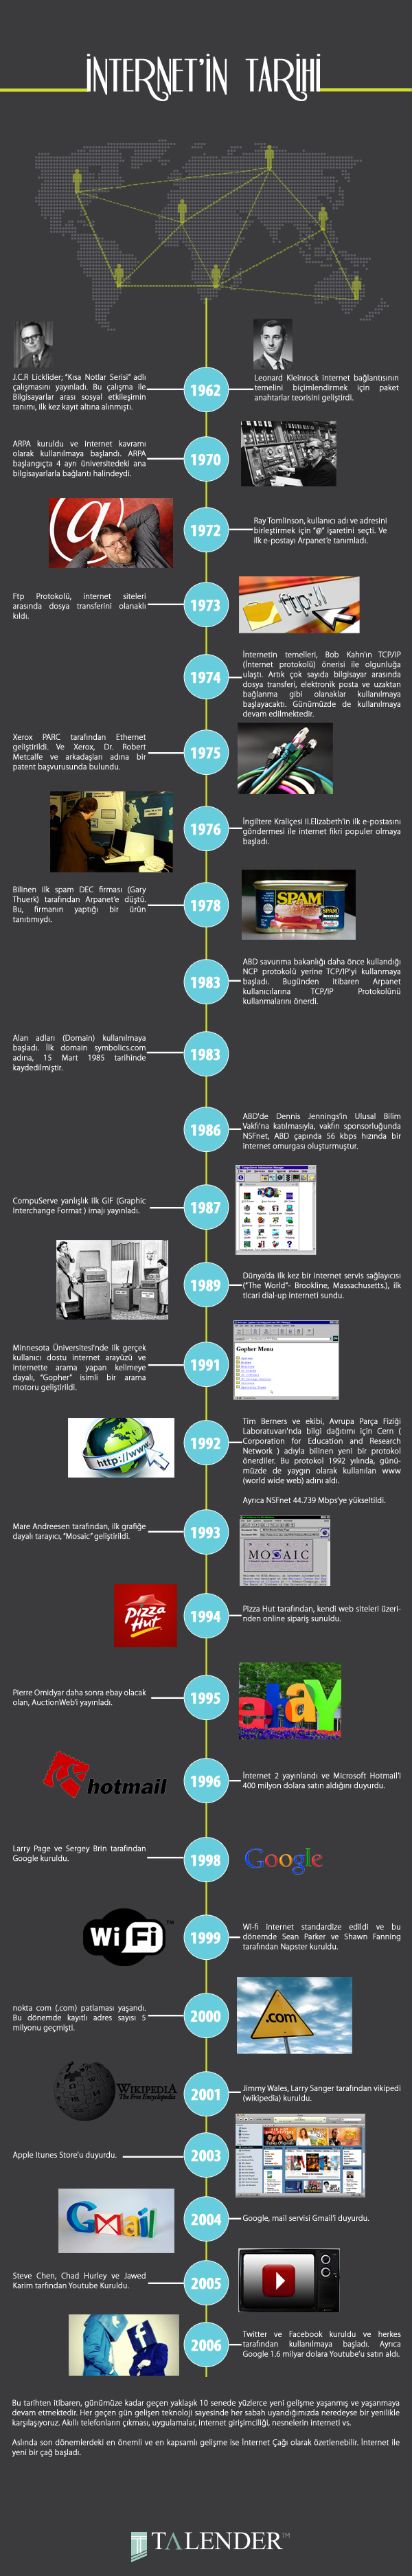 İnternet Geçmişi ve Tarihi #infografik